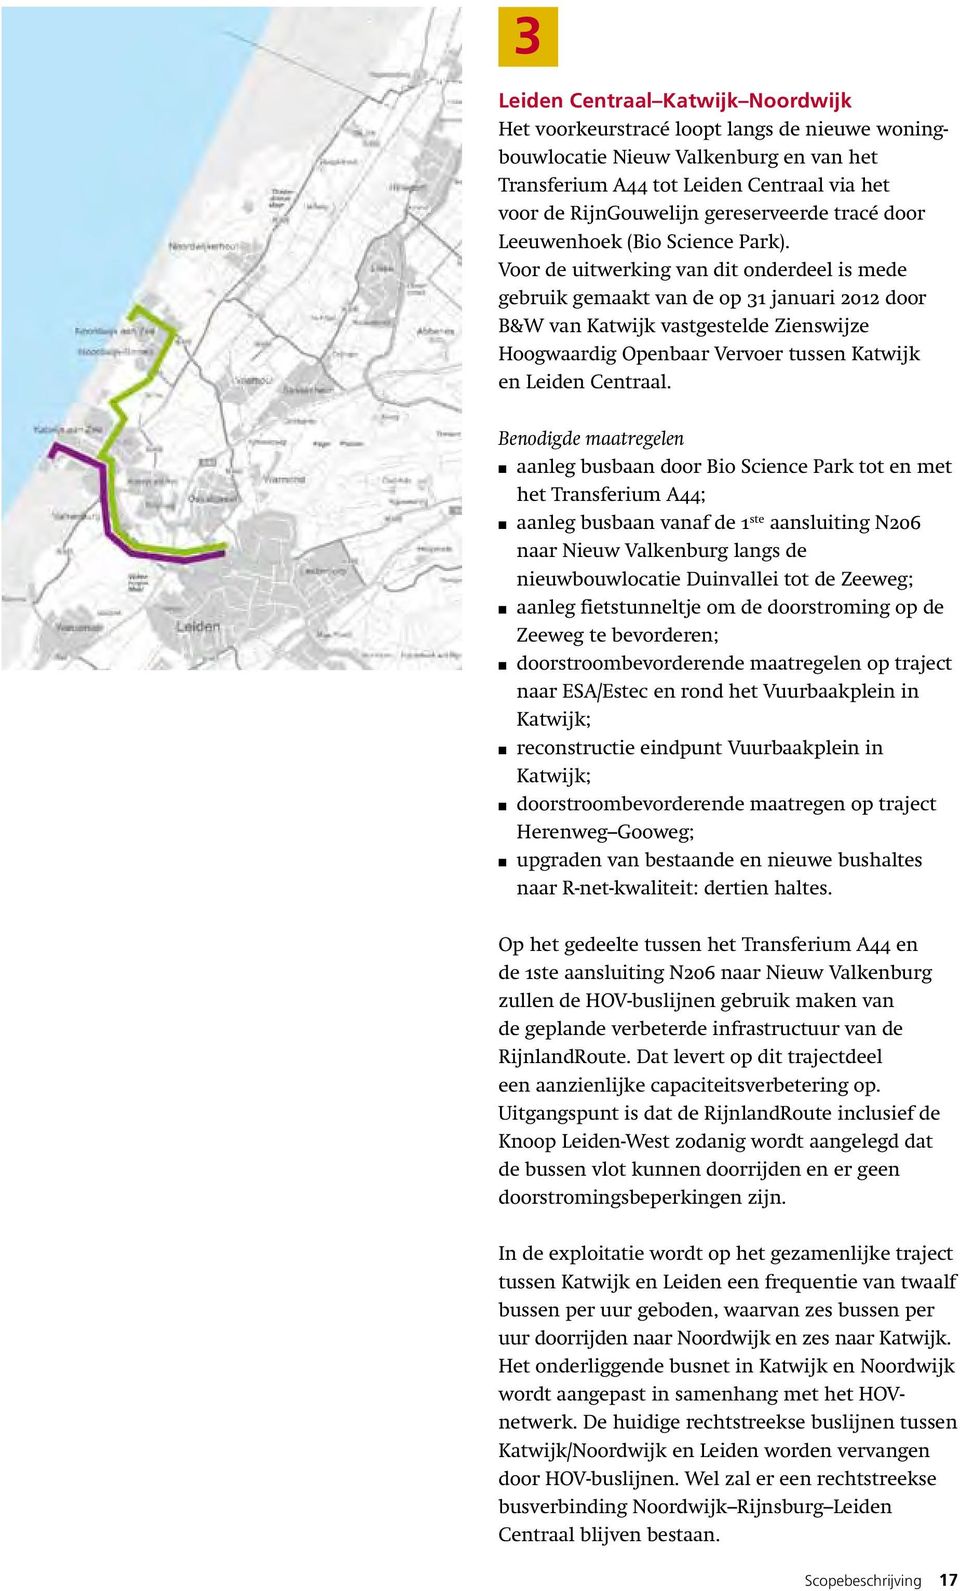 Voor de uitwerking van dit onderdeel is mede gebruik gemaakt van de op 31 januari 2012 door B&W van Katwijk vastgestelde Zienswijze Hoogwaardig Openbaar Vervoer tussen Katwijk en Leiden Centraal.